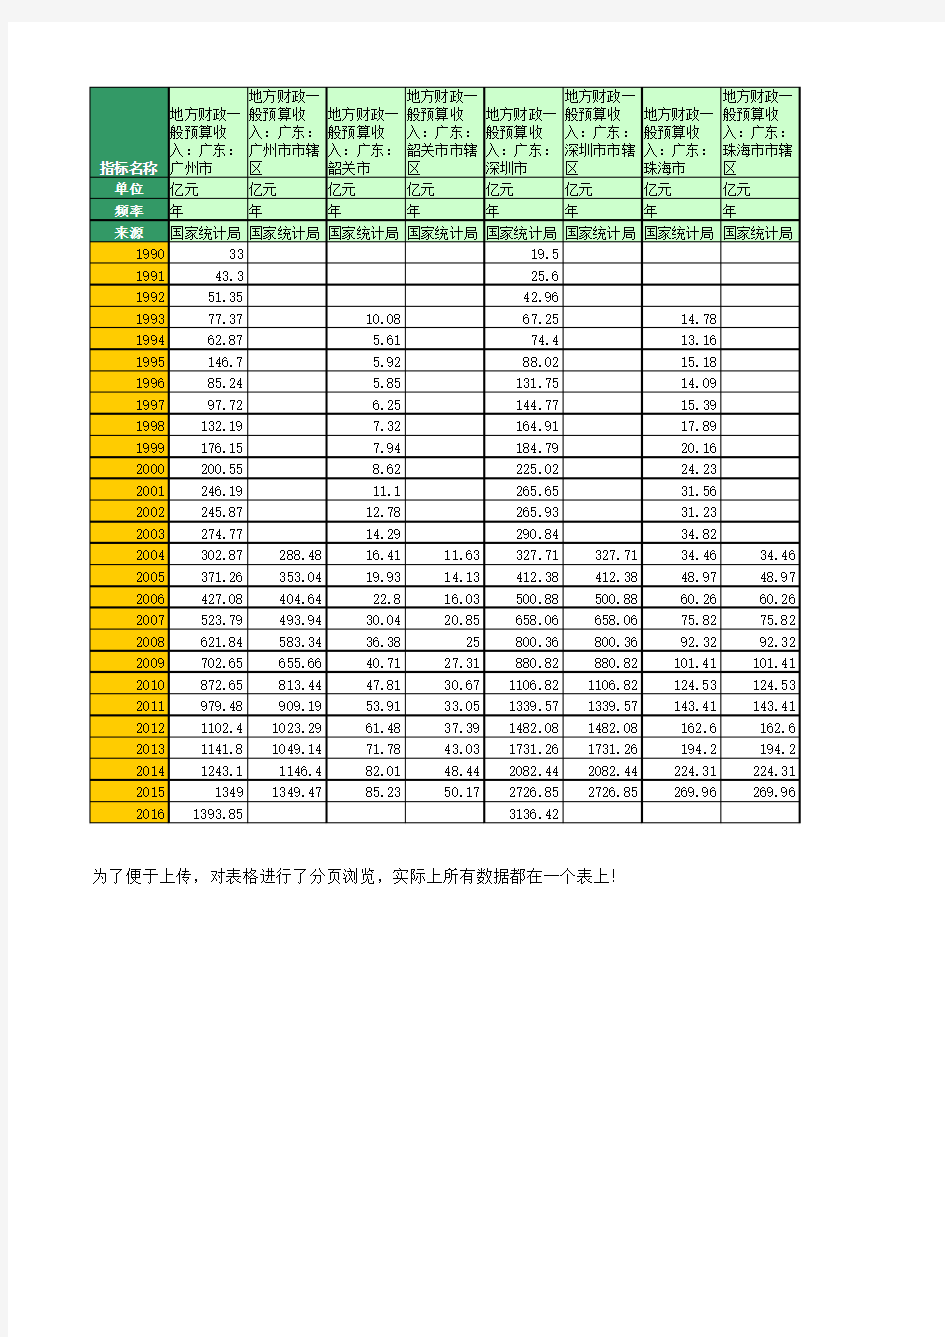 地方财政预算收入：广东(1990年至2016年)